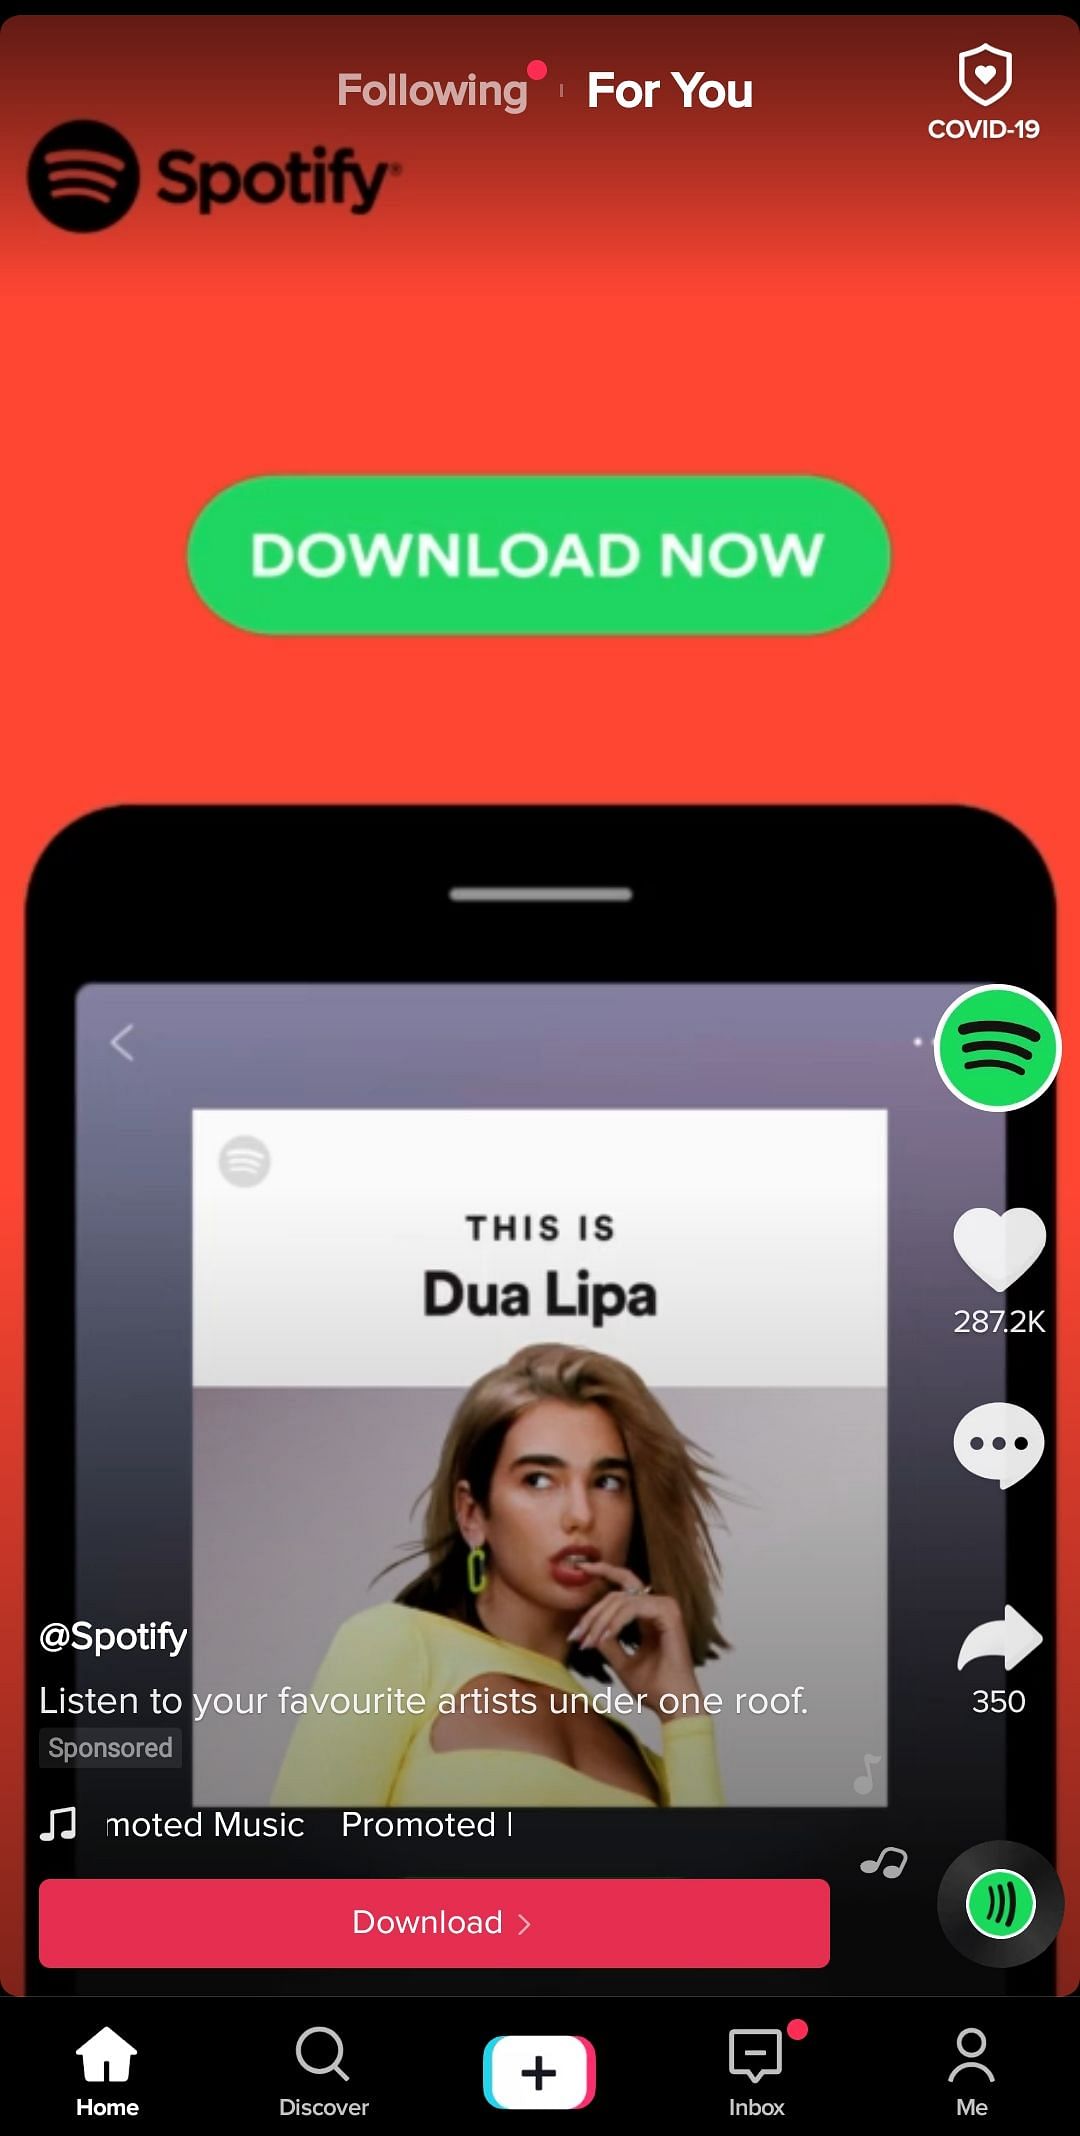 A Spotify ad on TikTok